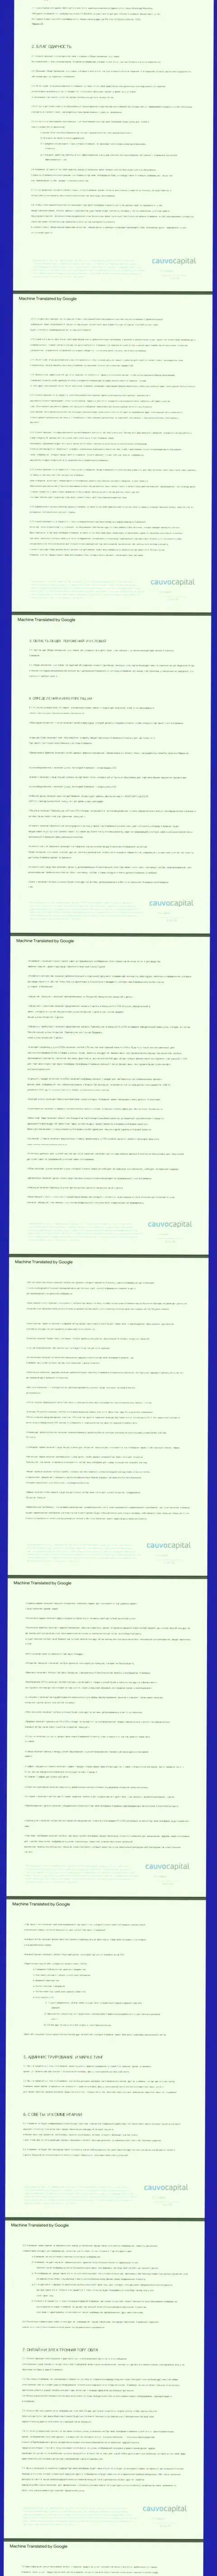 Часть первая пользовательского соглашения компании CauvoCapital